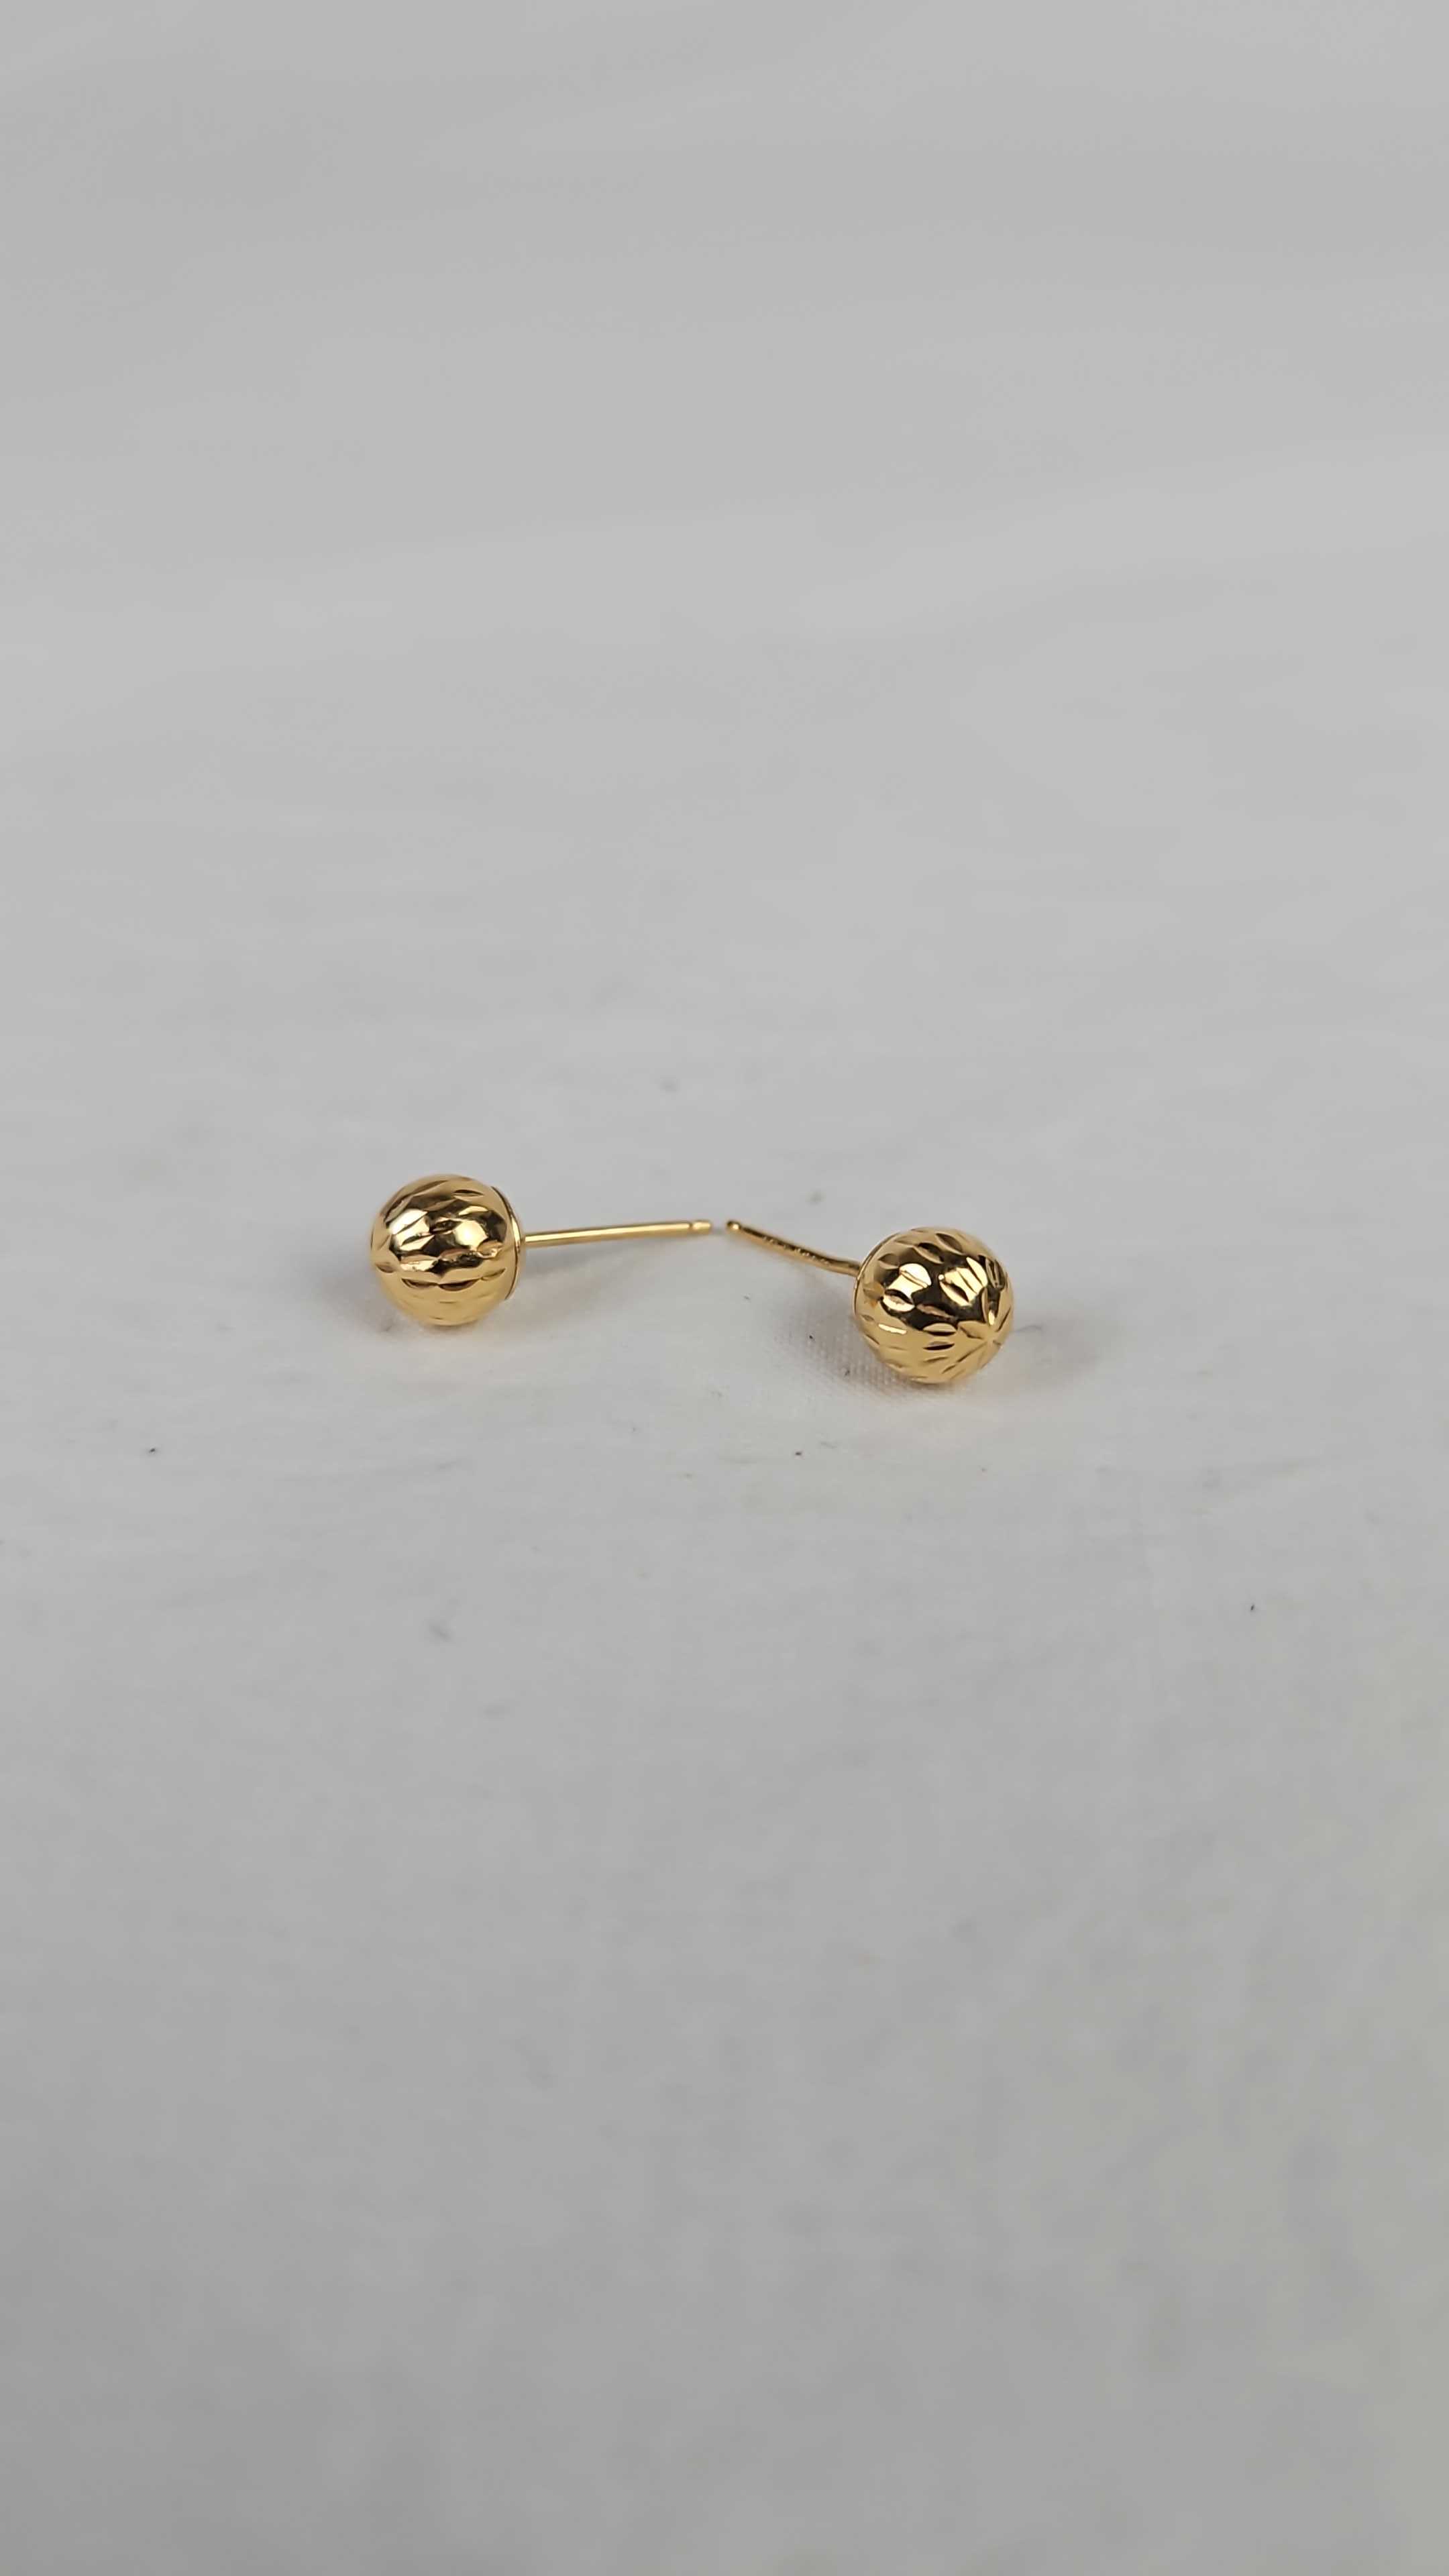 14K White Gold University of Louisville X-Small Post Earrings by LogoArt